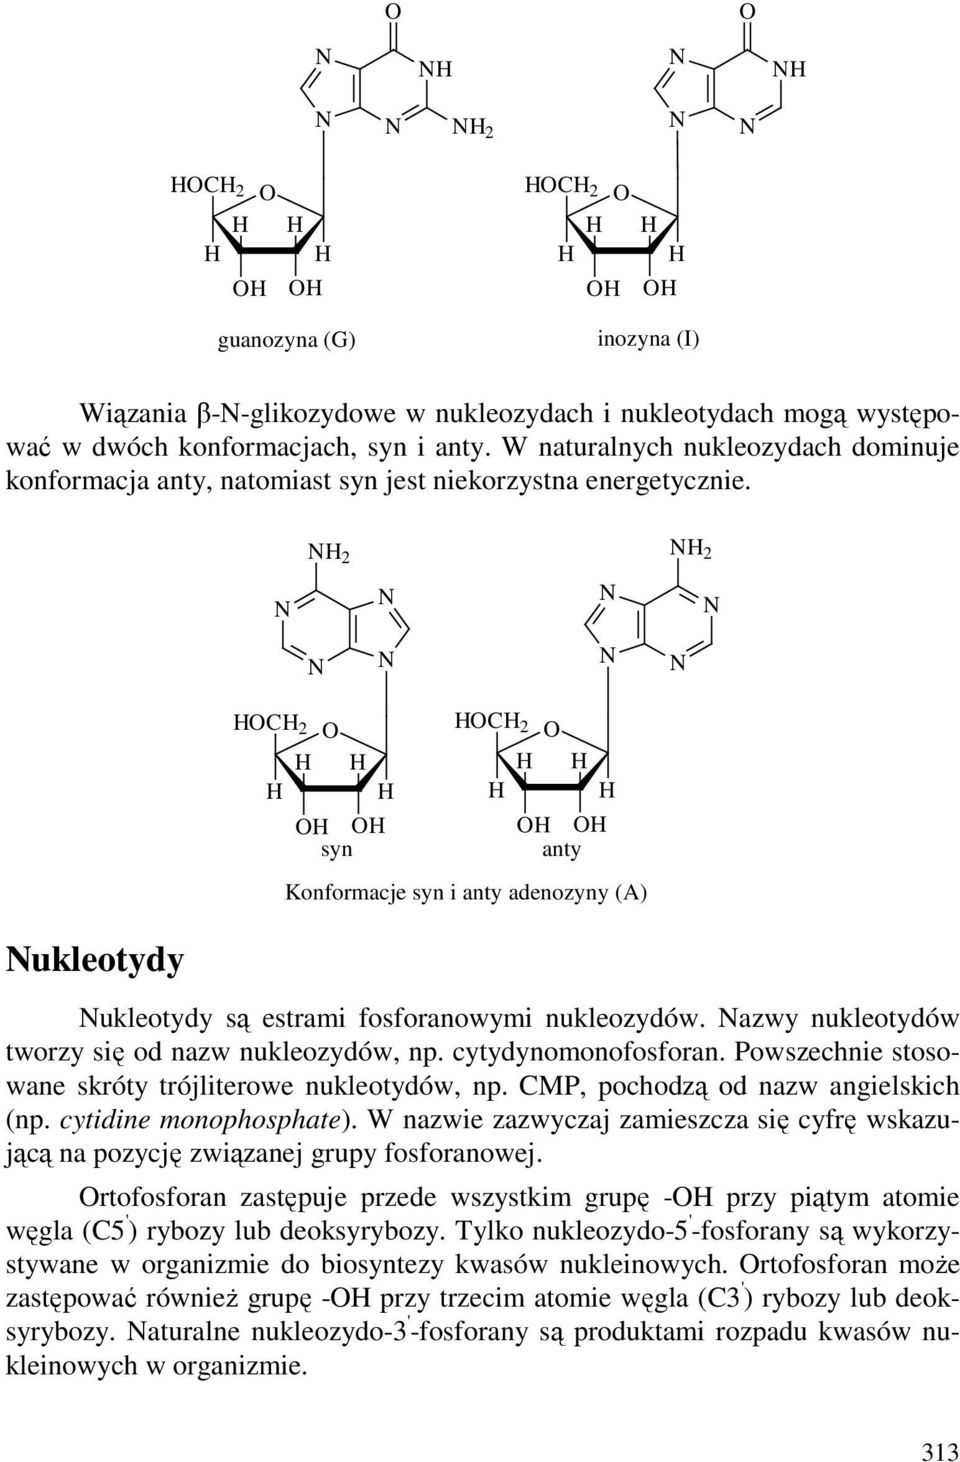 2 2 C 2 C 2 syn anty Konformacje syn i anty adenozyny (A) ukleotydy ukleotydy są estrami fosforanowymi nukleozydów. azwy nukleotydów tworzy się od nazw nukleozydów, np. cytydynomonofosforan.